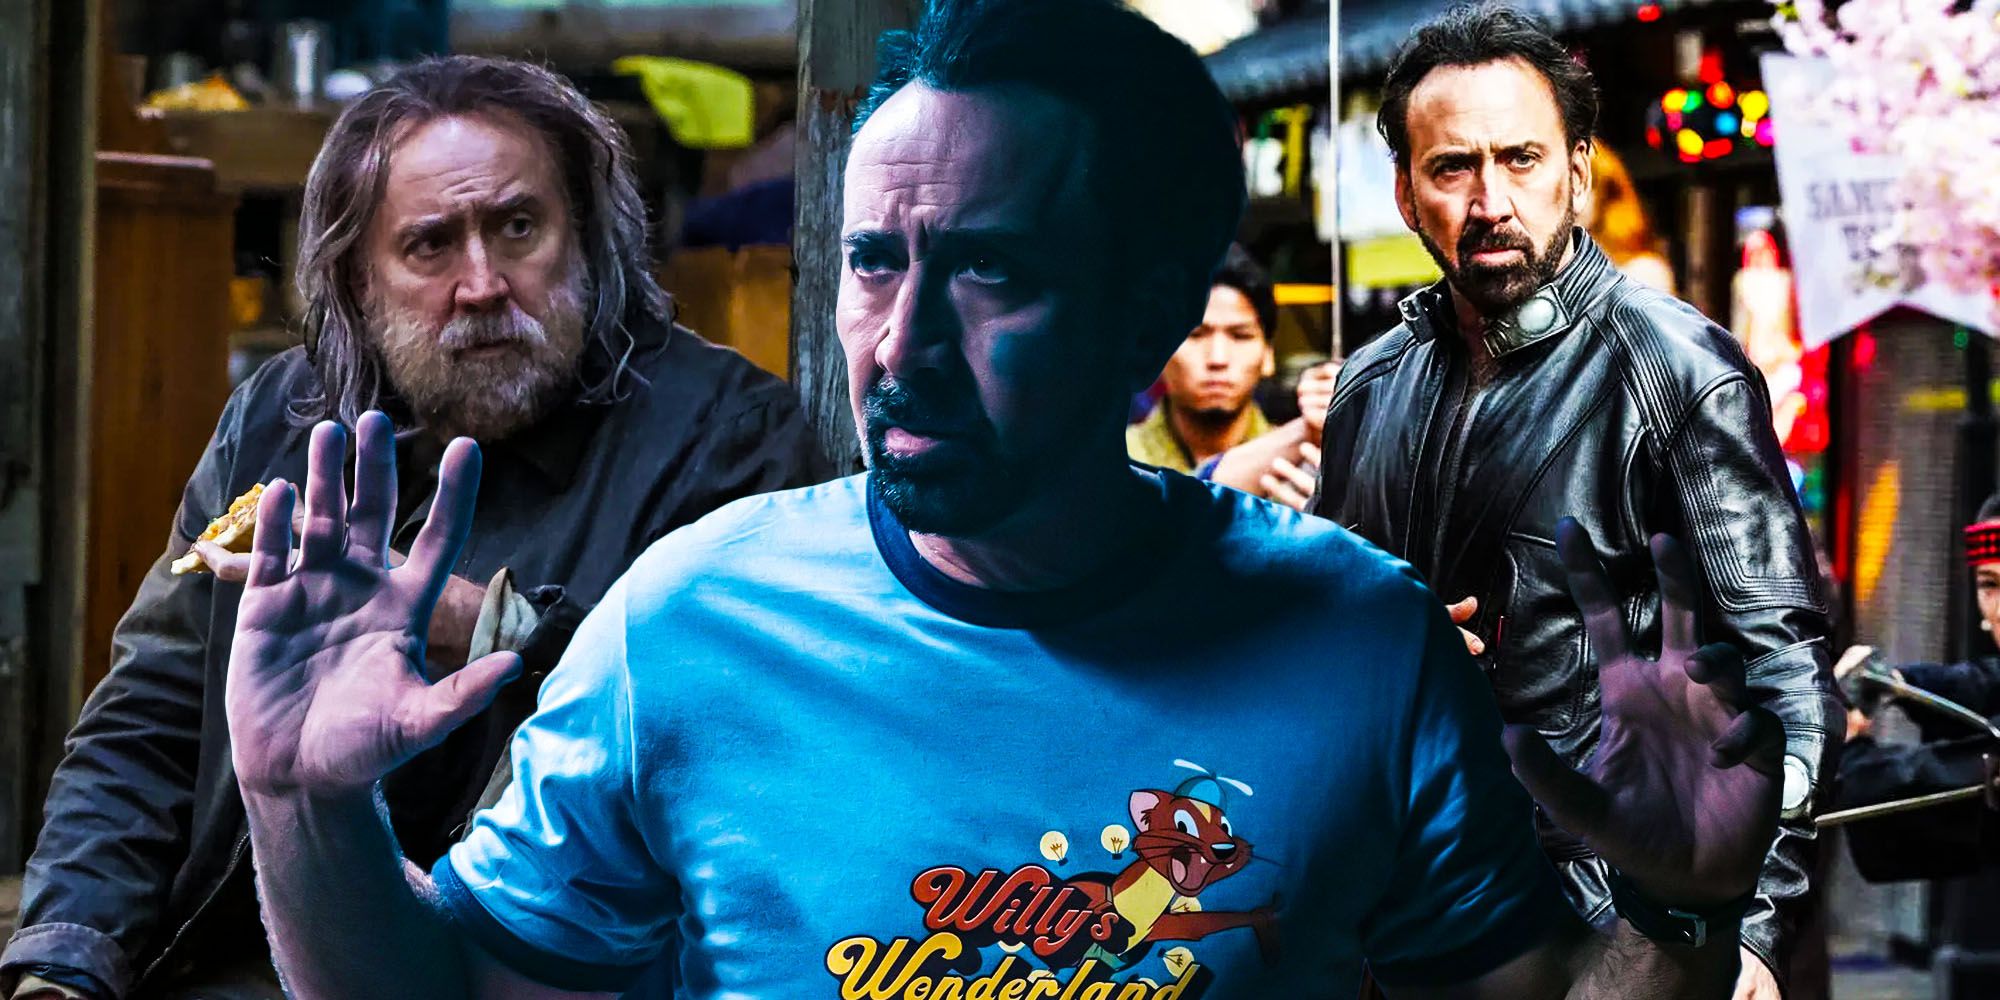 Nicolas Cage 2021 movies ranked willys wonderland pig prisoners of the ghostland